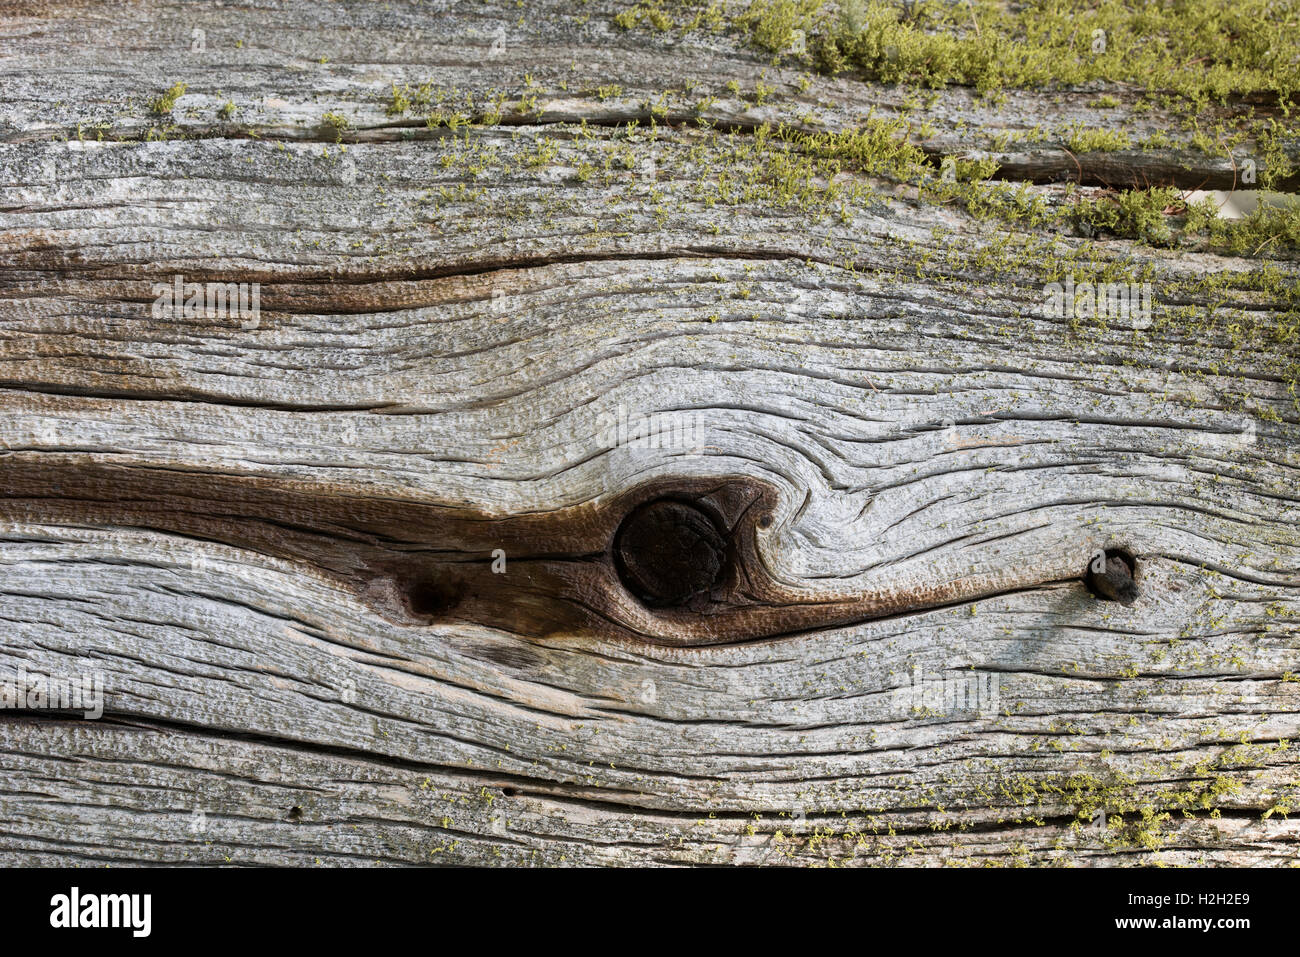 Holz, détail | Bois, détail Banque D'Images